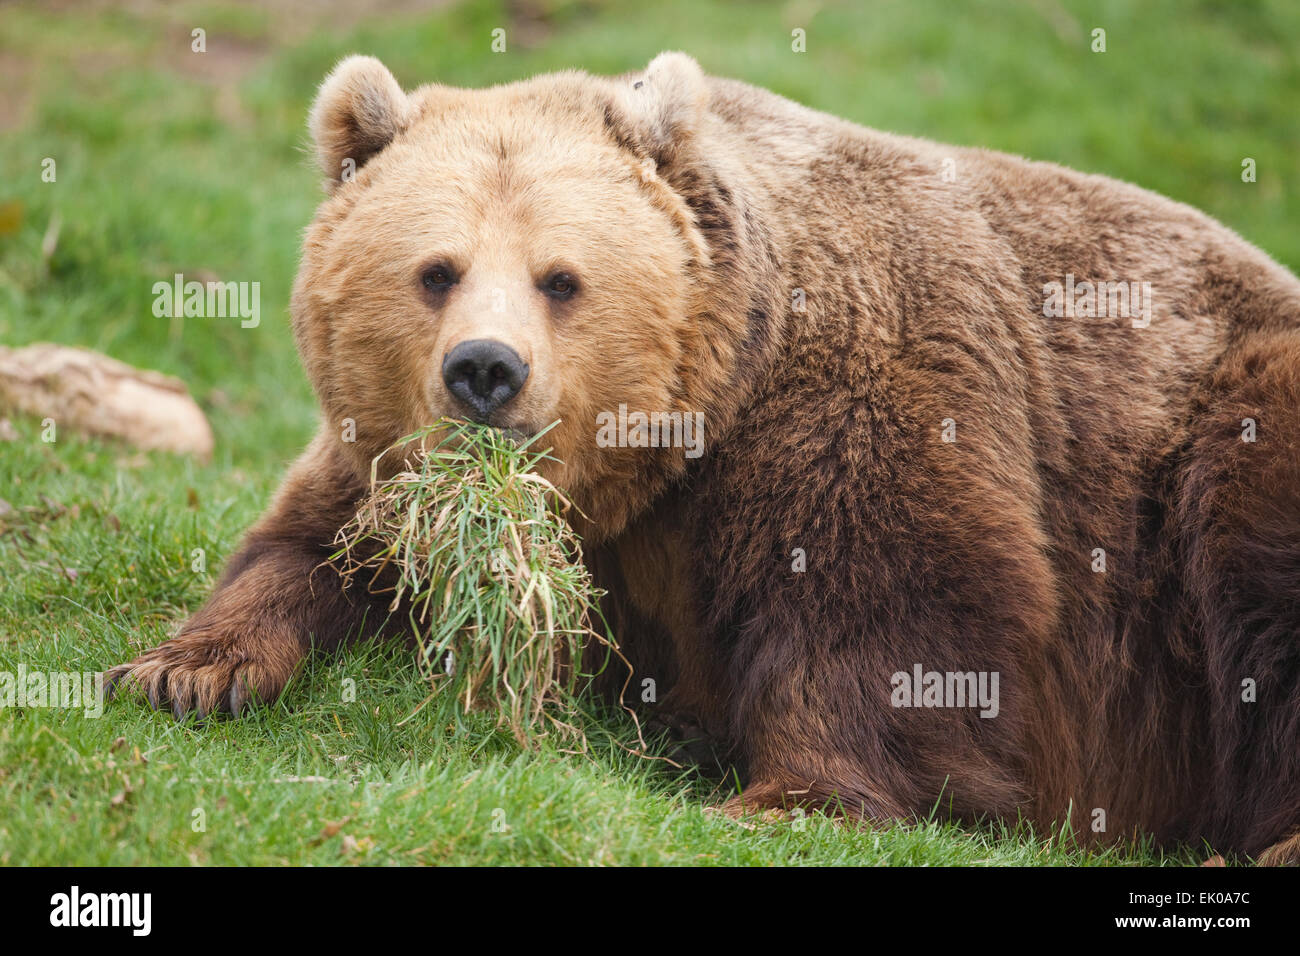 L'ours brun (Ursus arctos arctos). La nature d'un animal omnivore décrit comme indiqué par l'herbe carnivore tenue en bouche. Banque D'Images